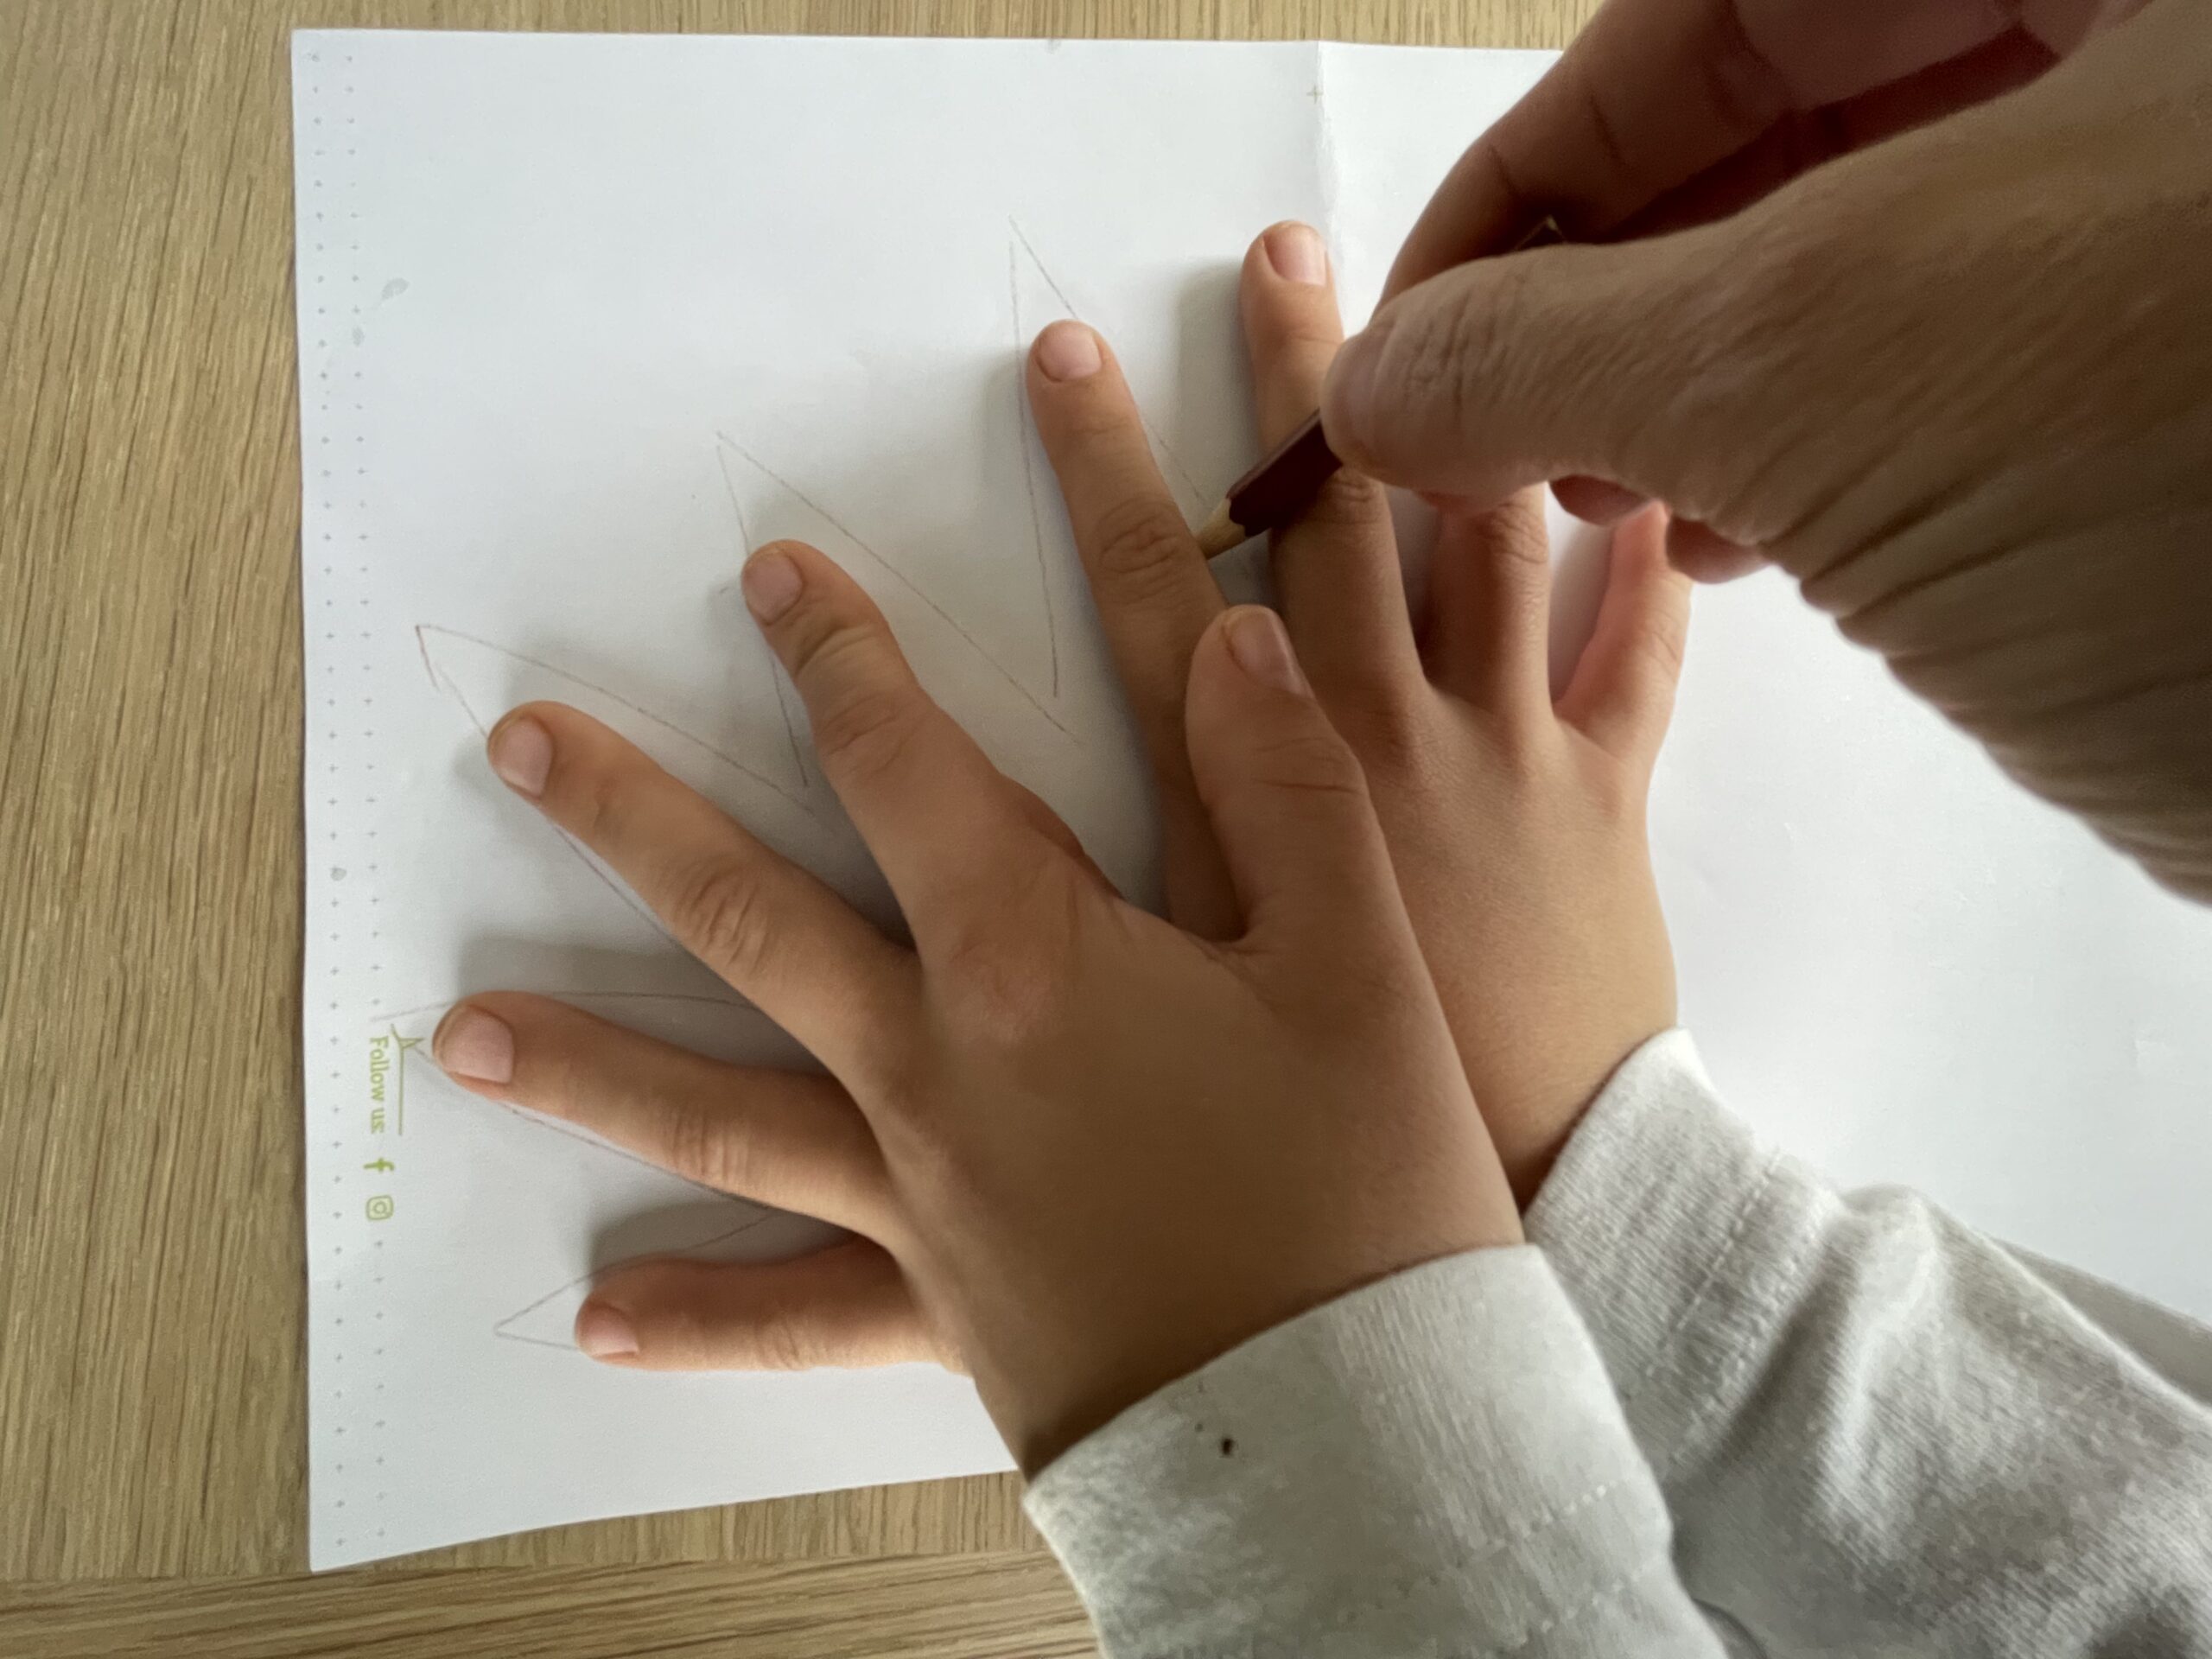 Bild zum Schritt 3 für das Bastel- und DIY-Abenteuer für Kinder: 'Beim letzten Finger stoppt ihr die Umrandung auf der Höhe...'